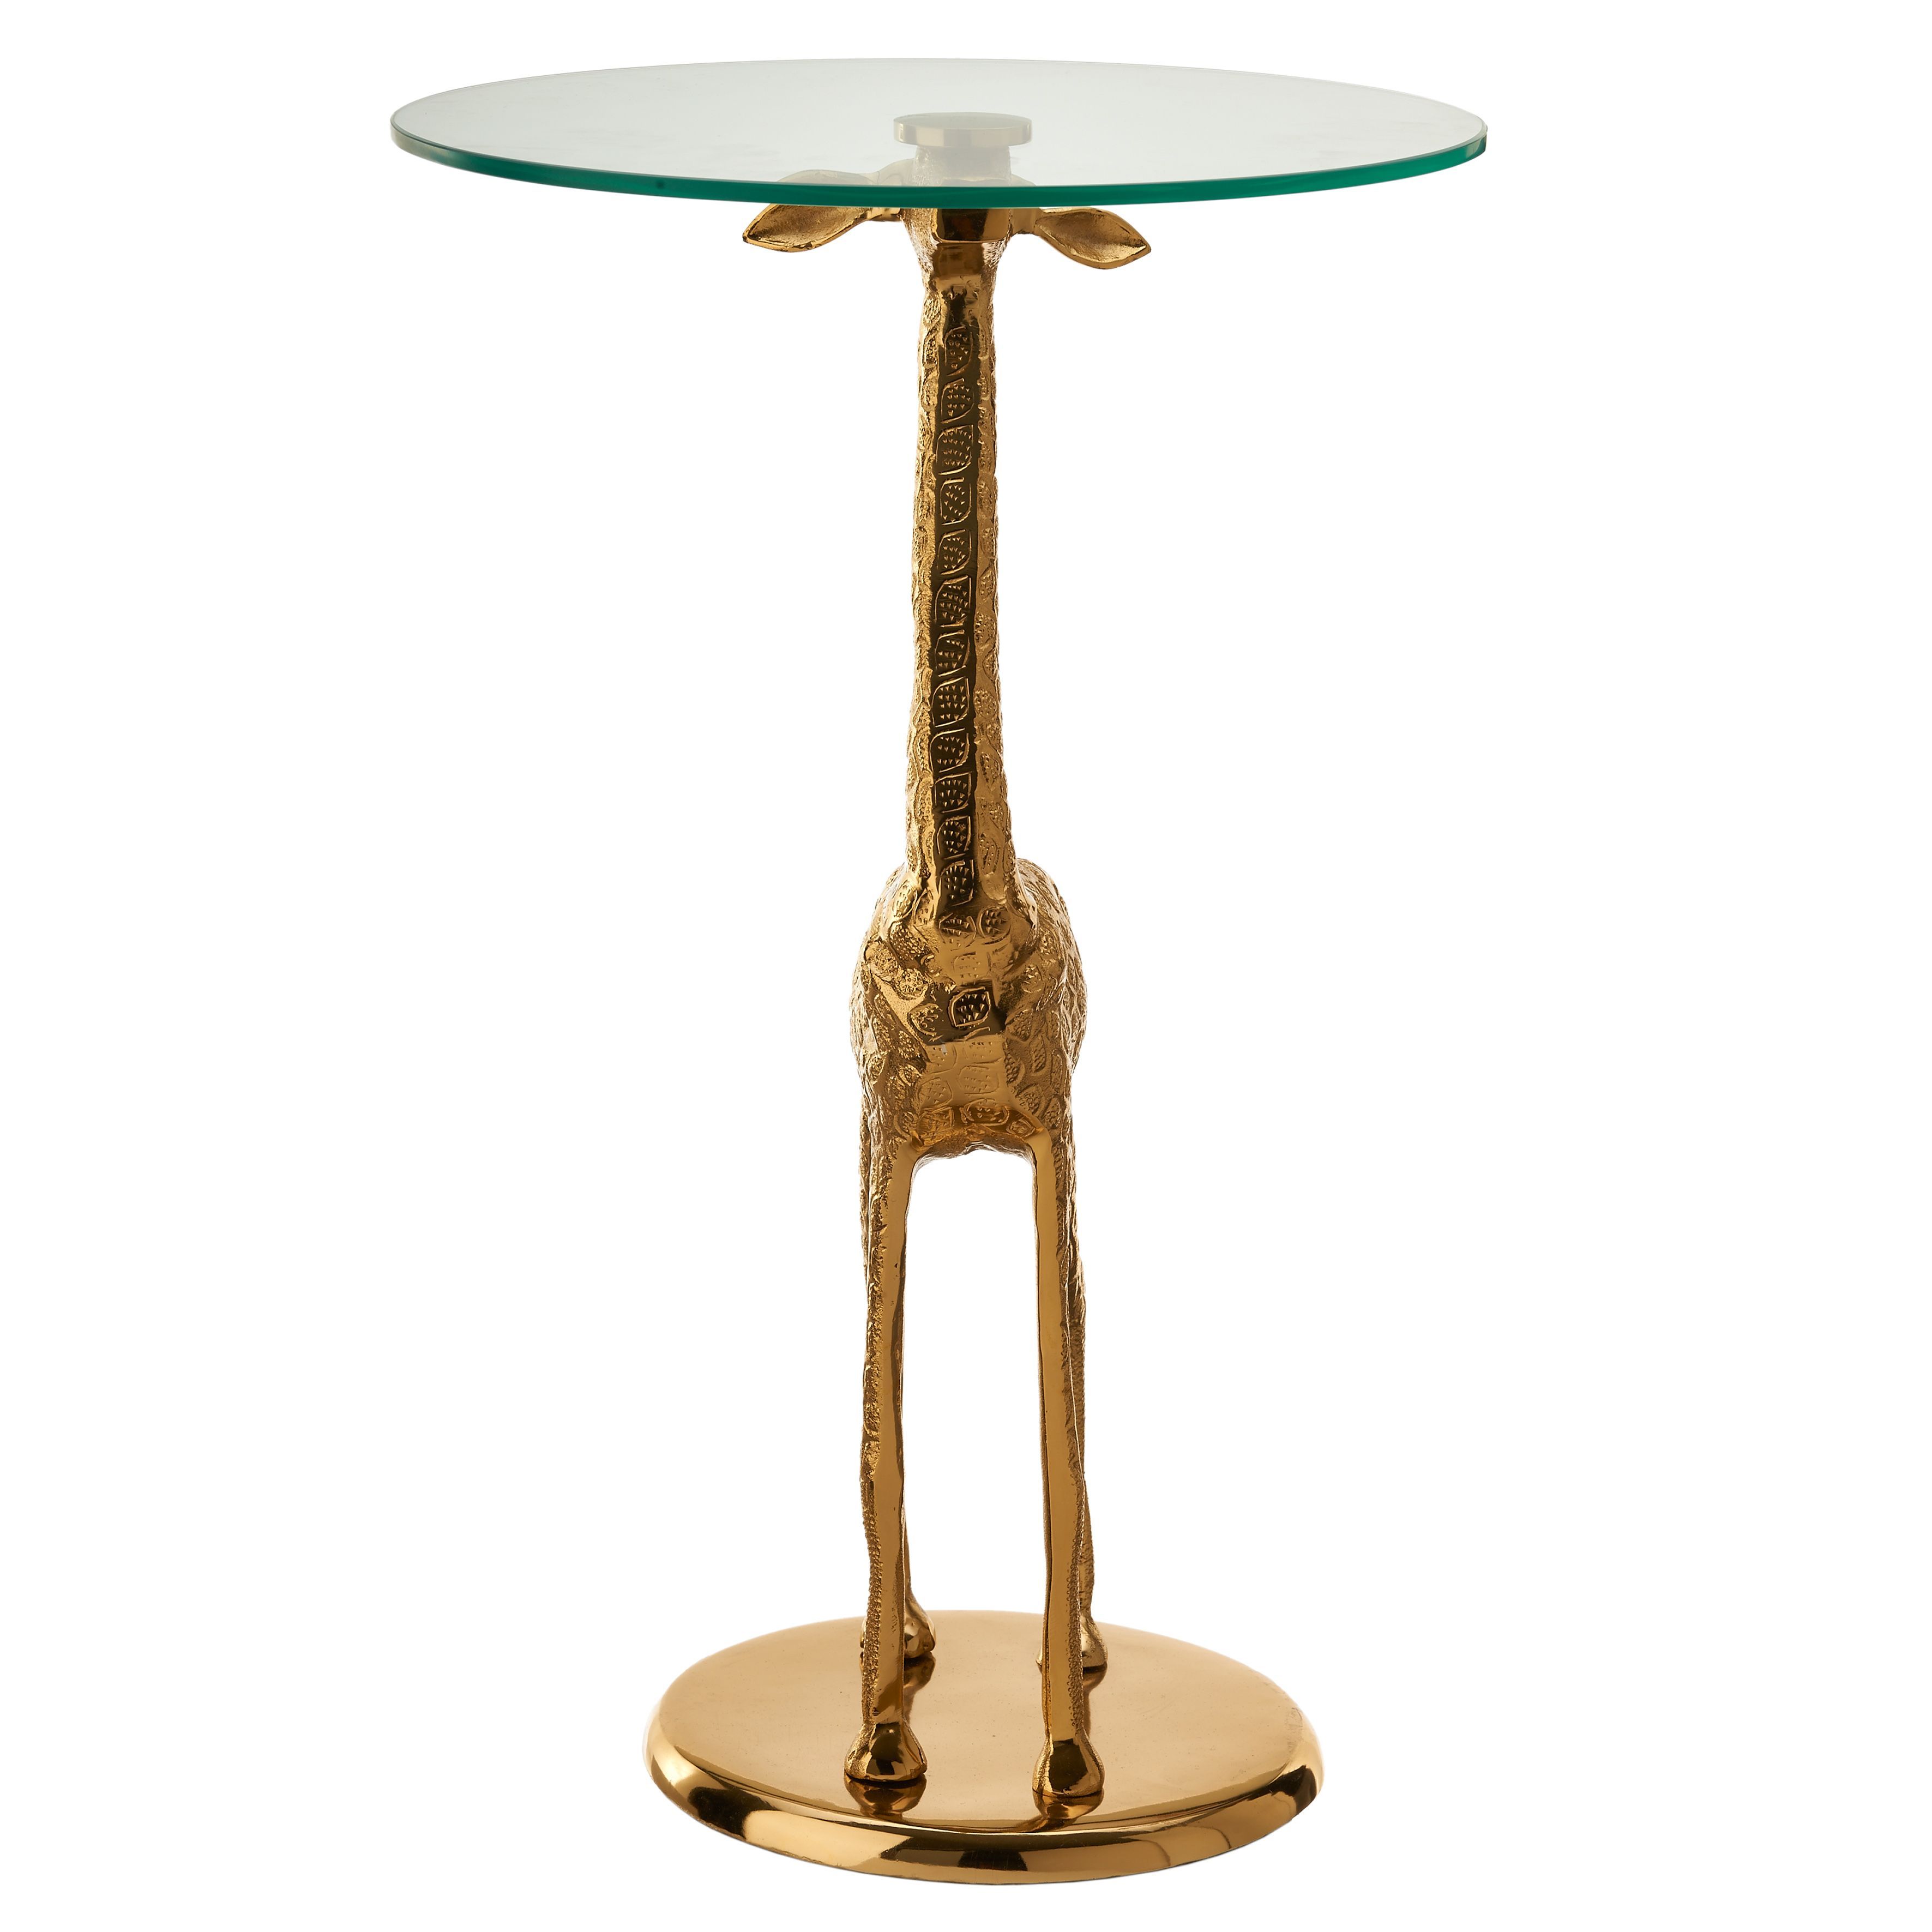 Coffee table Giraffe by Pols Potten